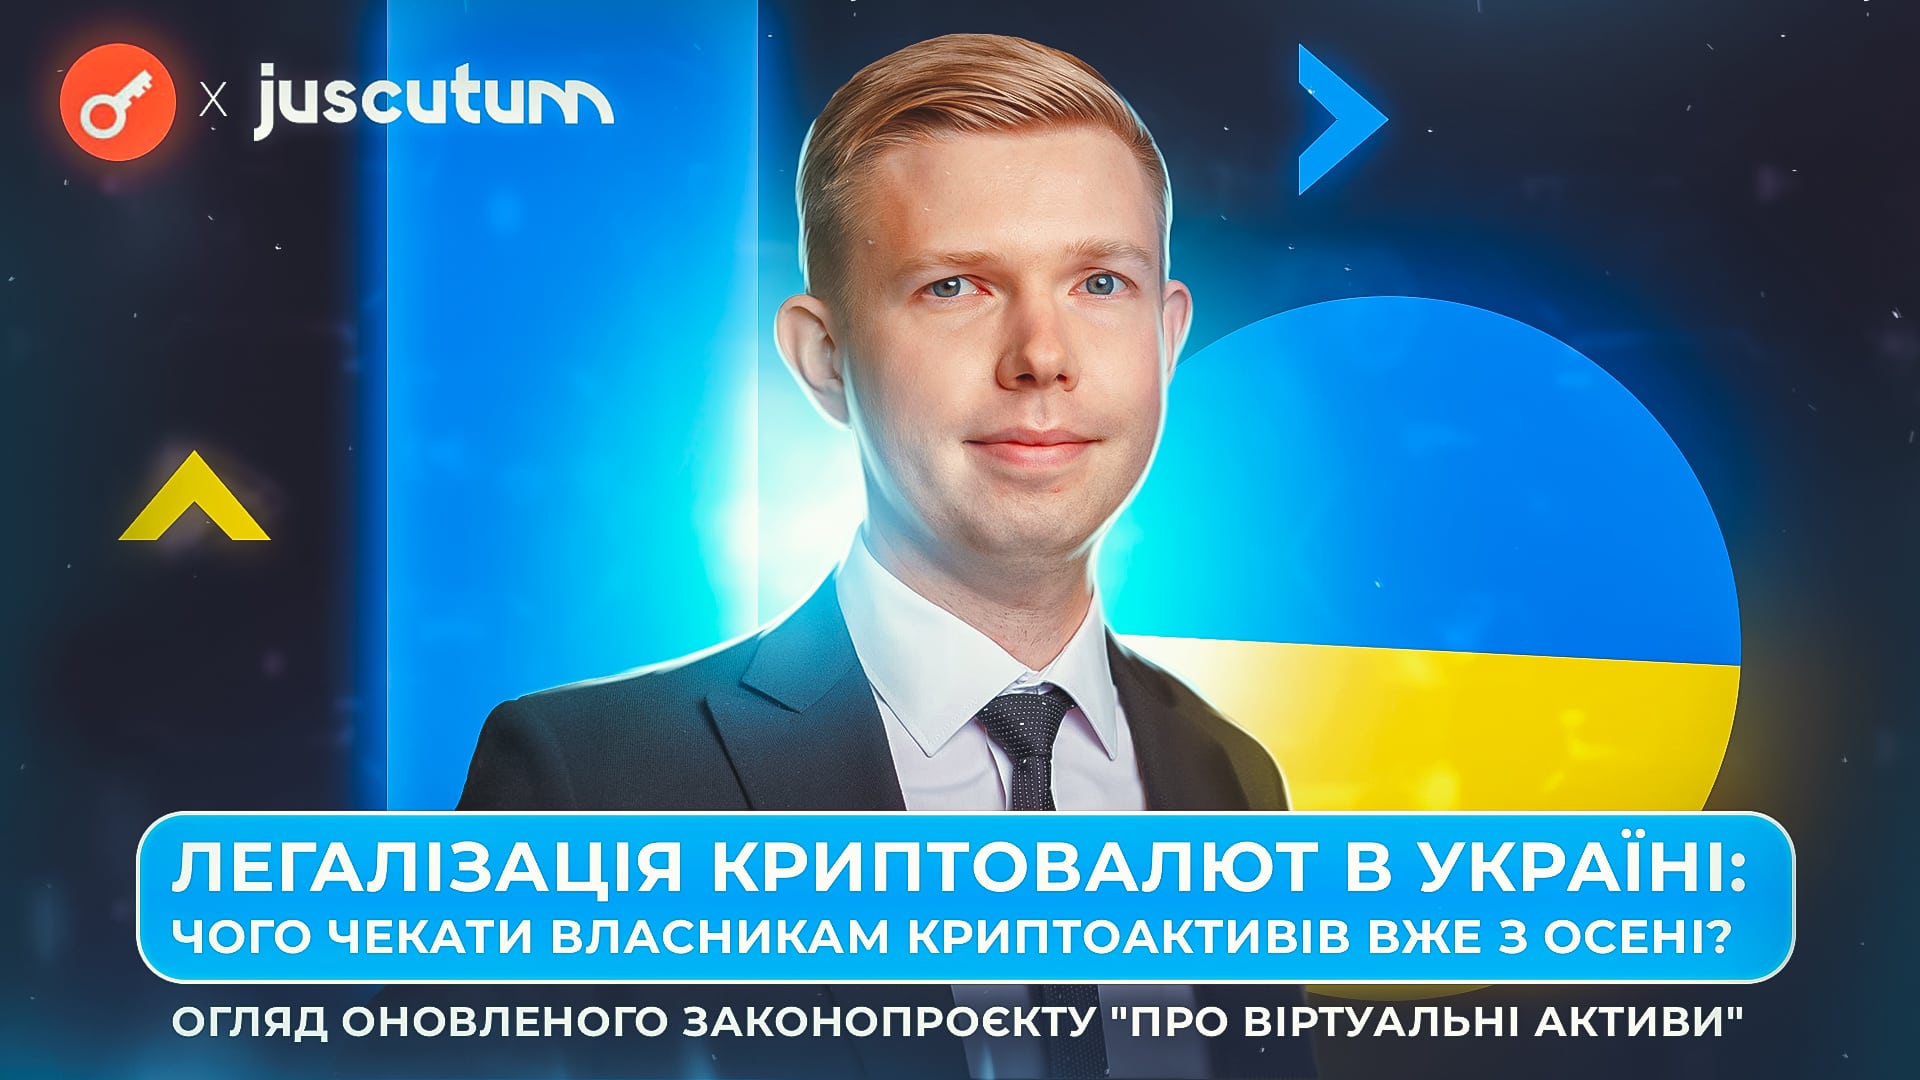 НКЦБФР Украины представила законопроект о криптовалюте: чего ждать владельцам криптоактивов уже осенью. Заглавный коллаж новости.